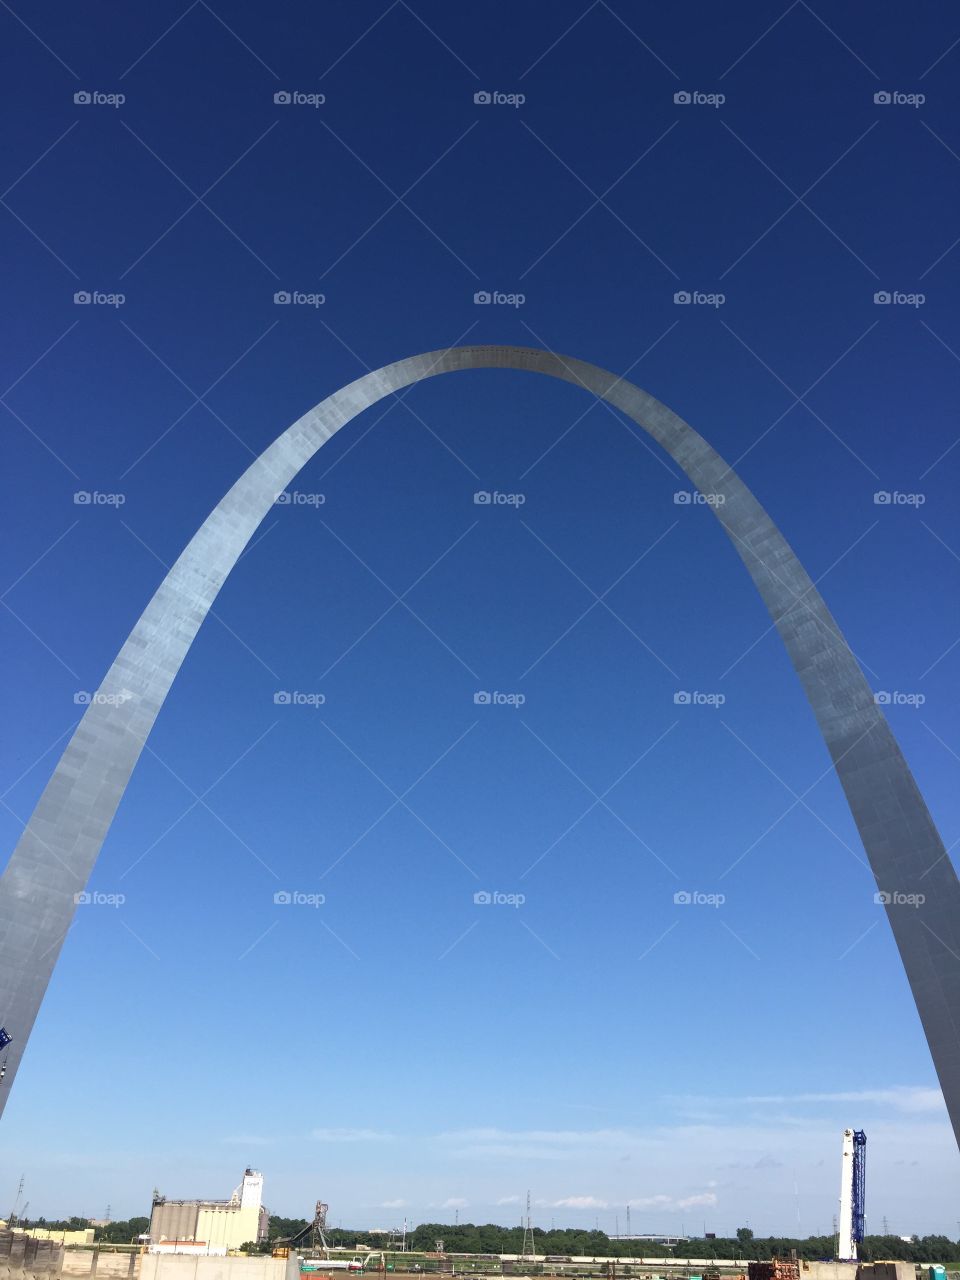 Famous tourist destination silver St. Louis Missouri arch set against cloudless blue sky